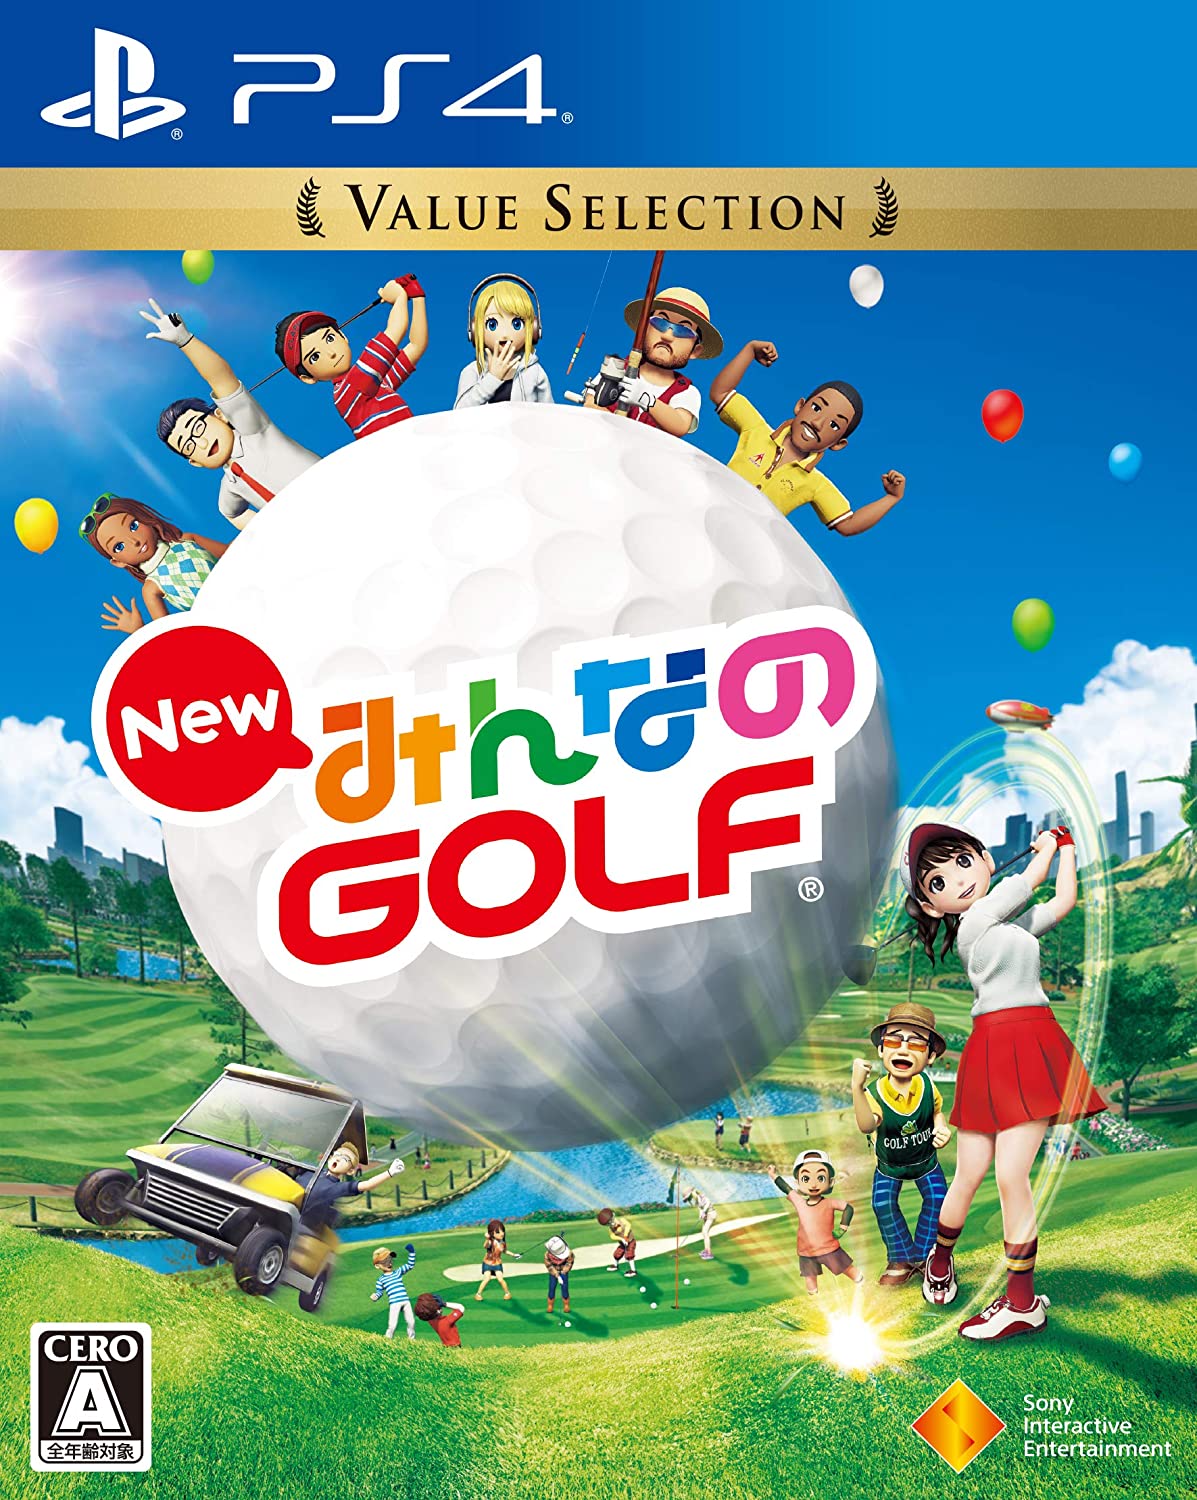 PS4で遊べる、ゴルフゲーム・GOLF GAME